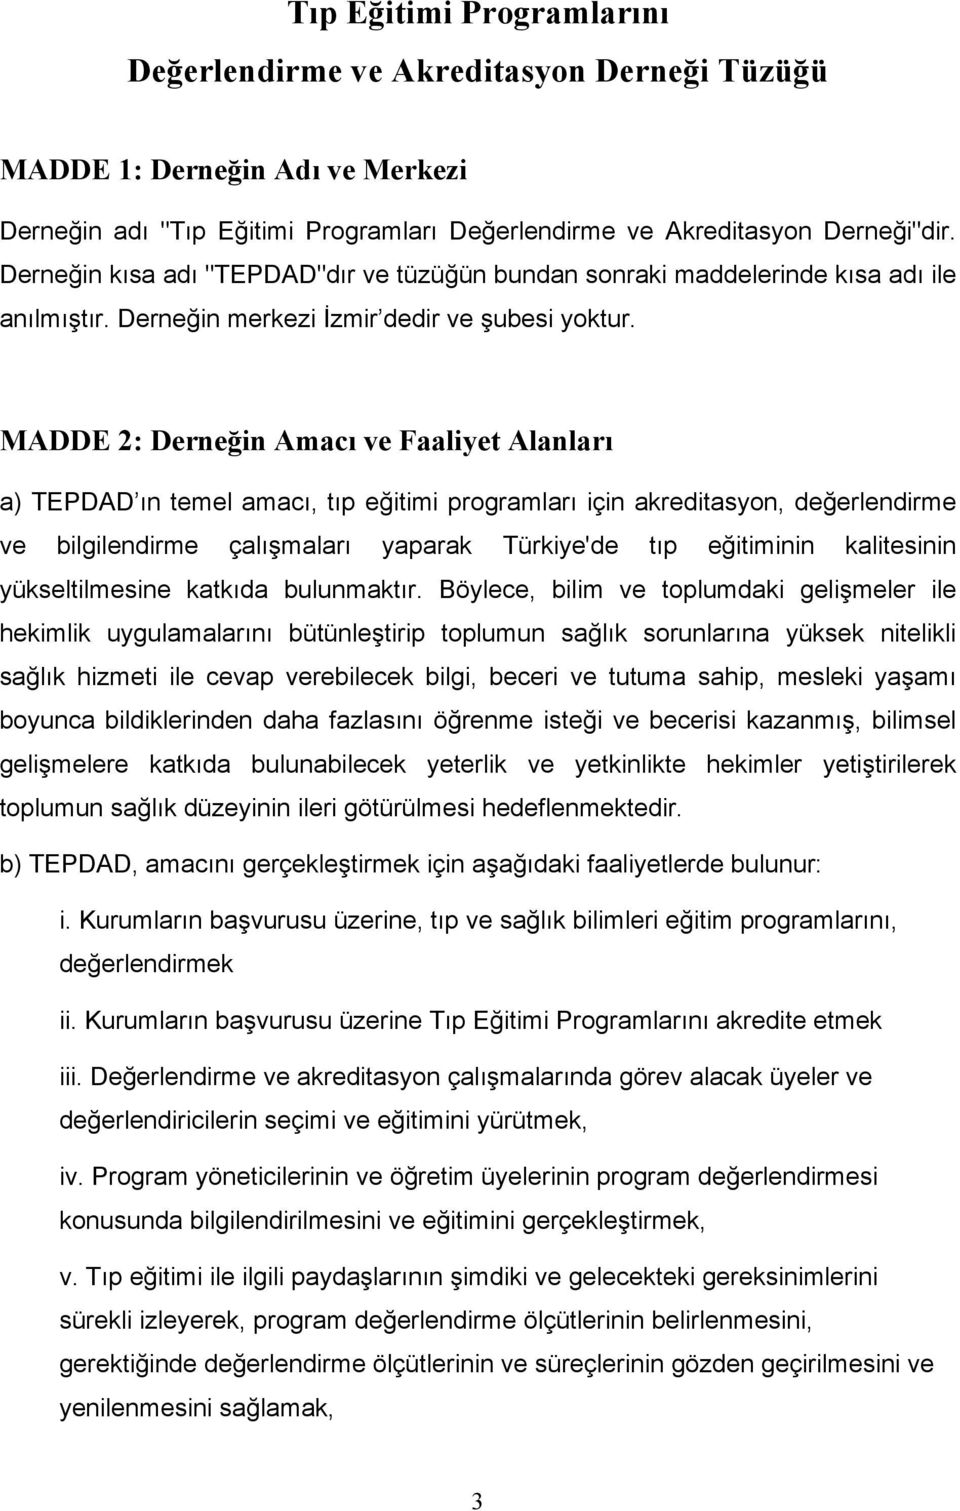 MADDE 2: Derneğin Amacı ve Faaliyet Alanları a) TEPDAD ın temel amacı, tıp eğitimi programları için akreditasyon, değerlendirme ve bilgilendirme çalışmaları yaparak Türkiye'de tıp eğitiminin